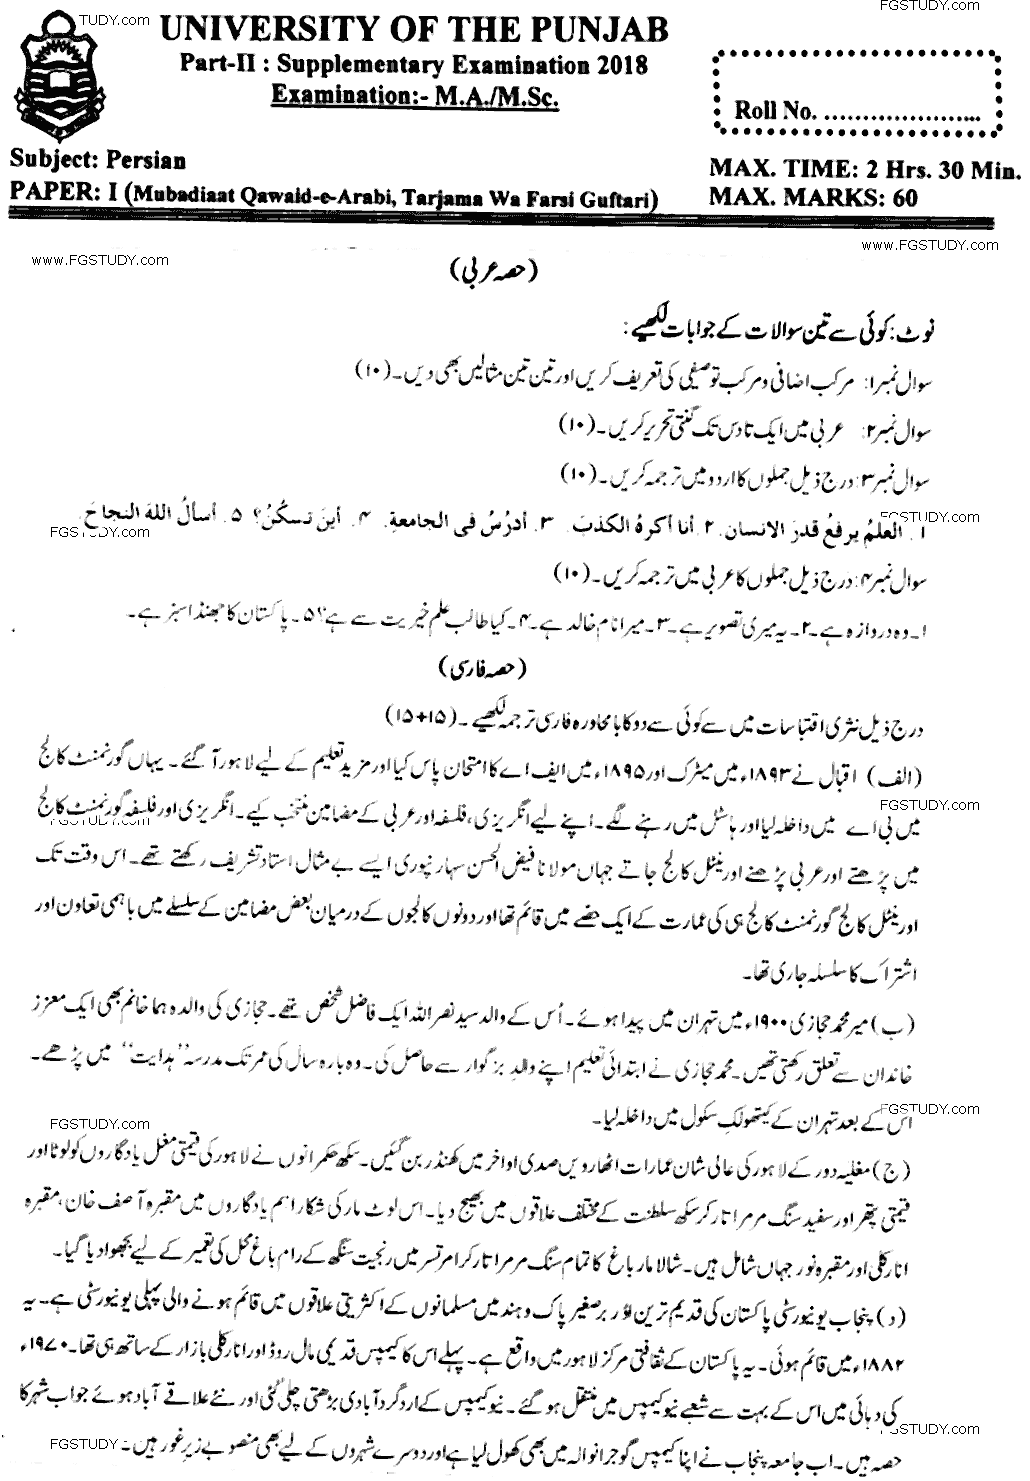 Ma Part 2 Persian Mubadiaat E Qawaid E Arabi Tarjama Wa Farsi Guftari Past Paper 2018 Punjab University